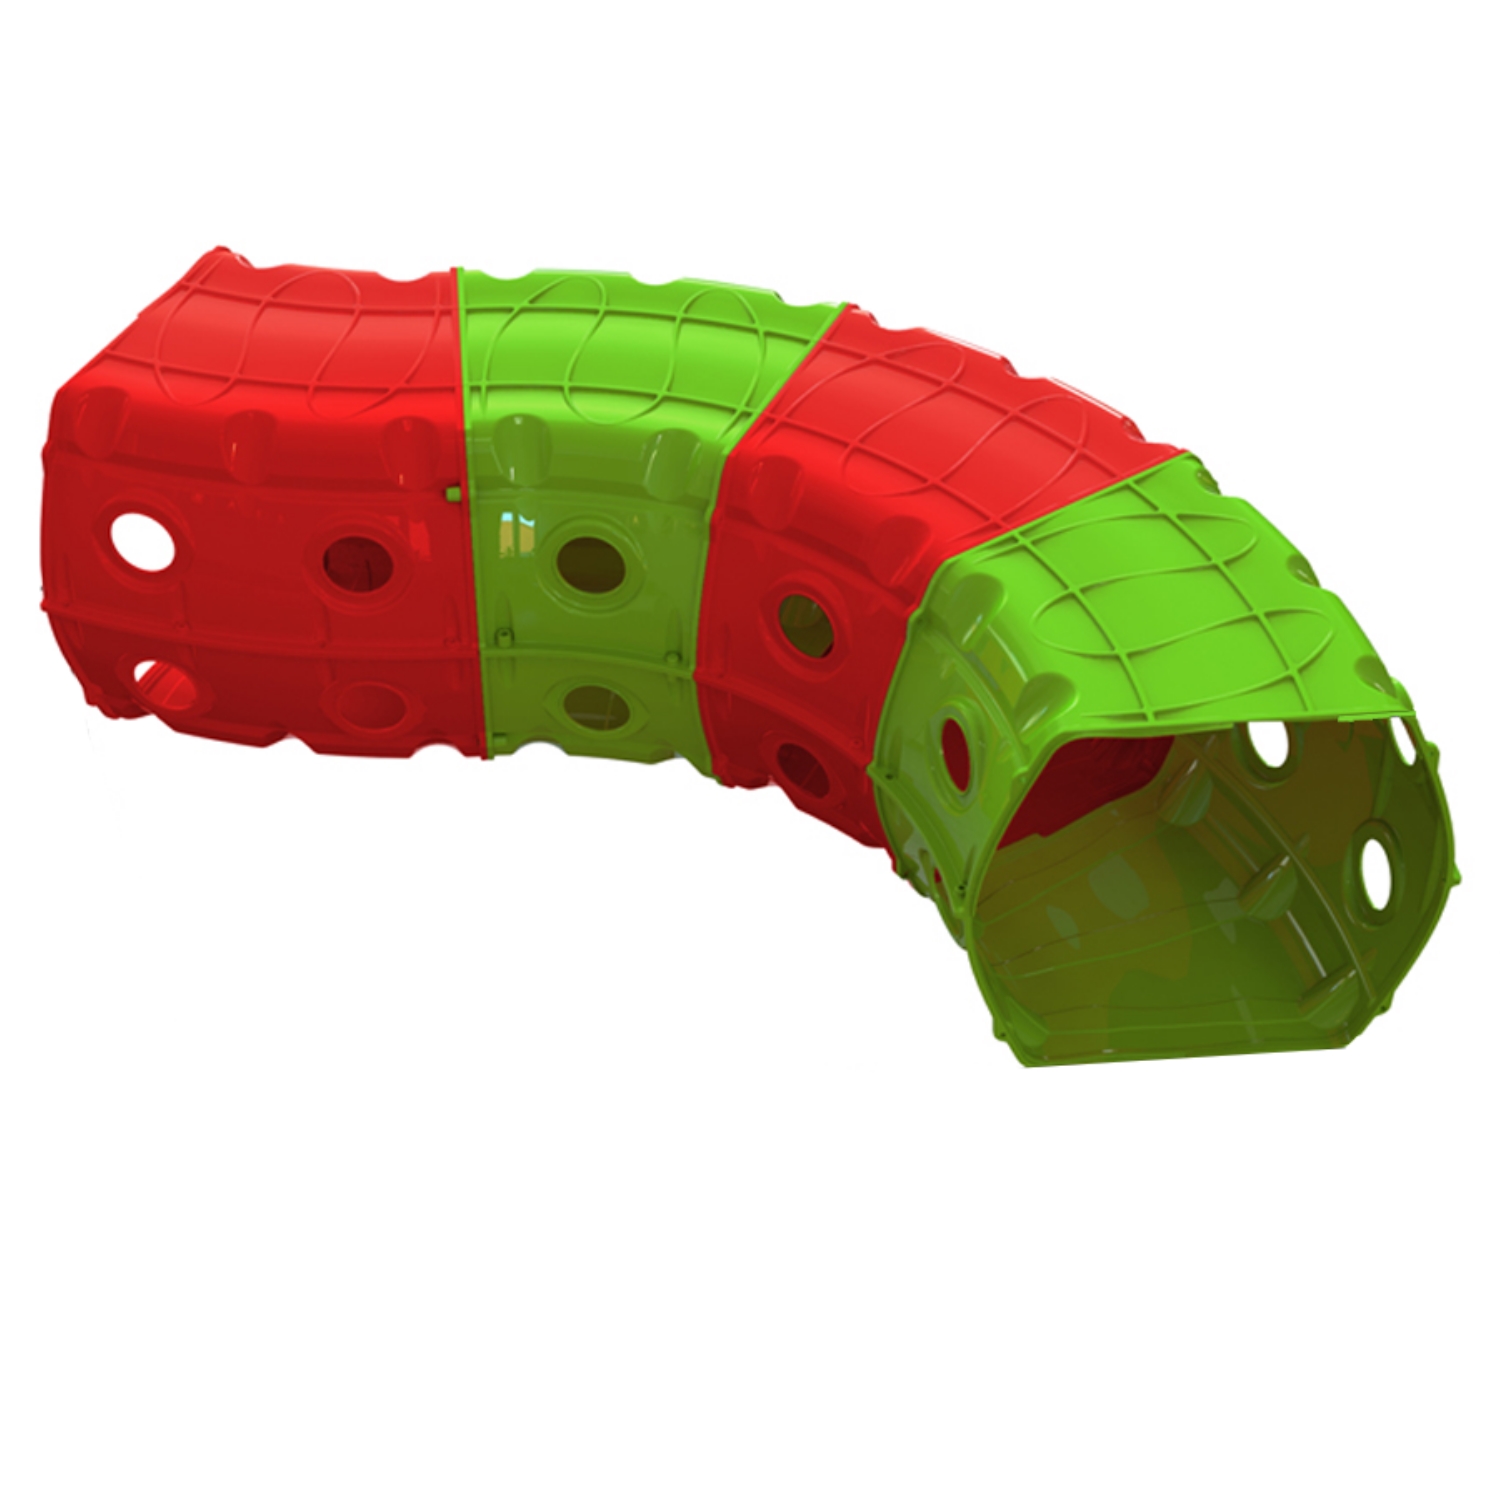 Игровой туннель для ползания Doloni из 4-х секций красно-зеленый 1х1.5х0.5 м - фото 1